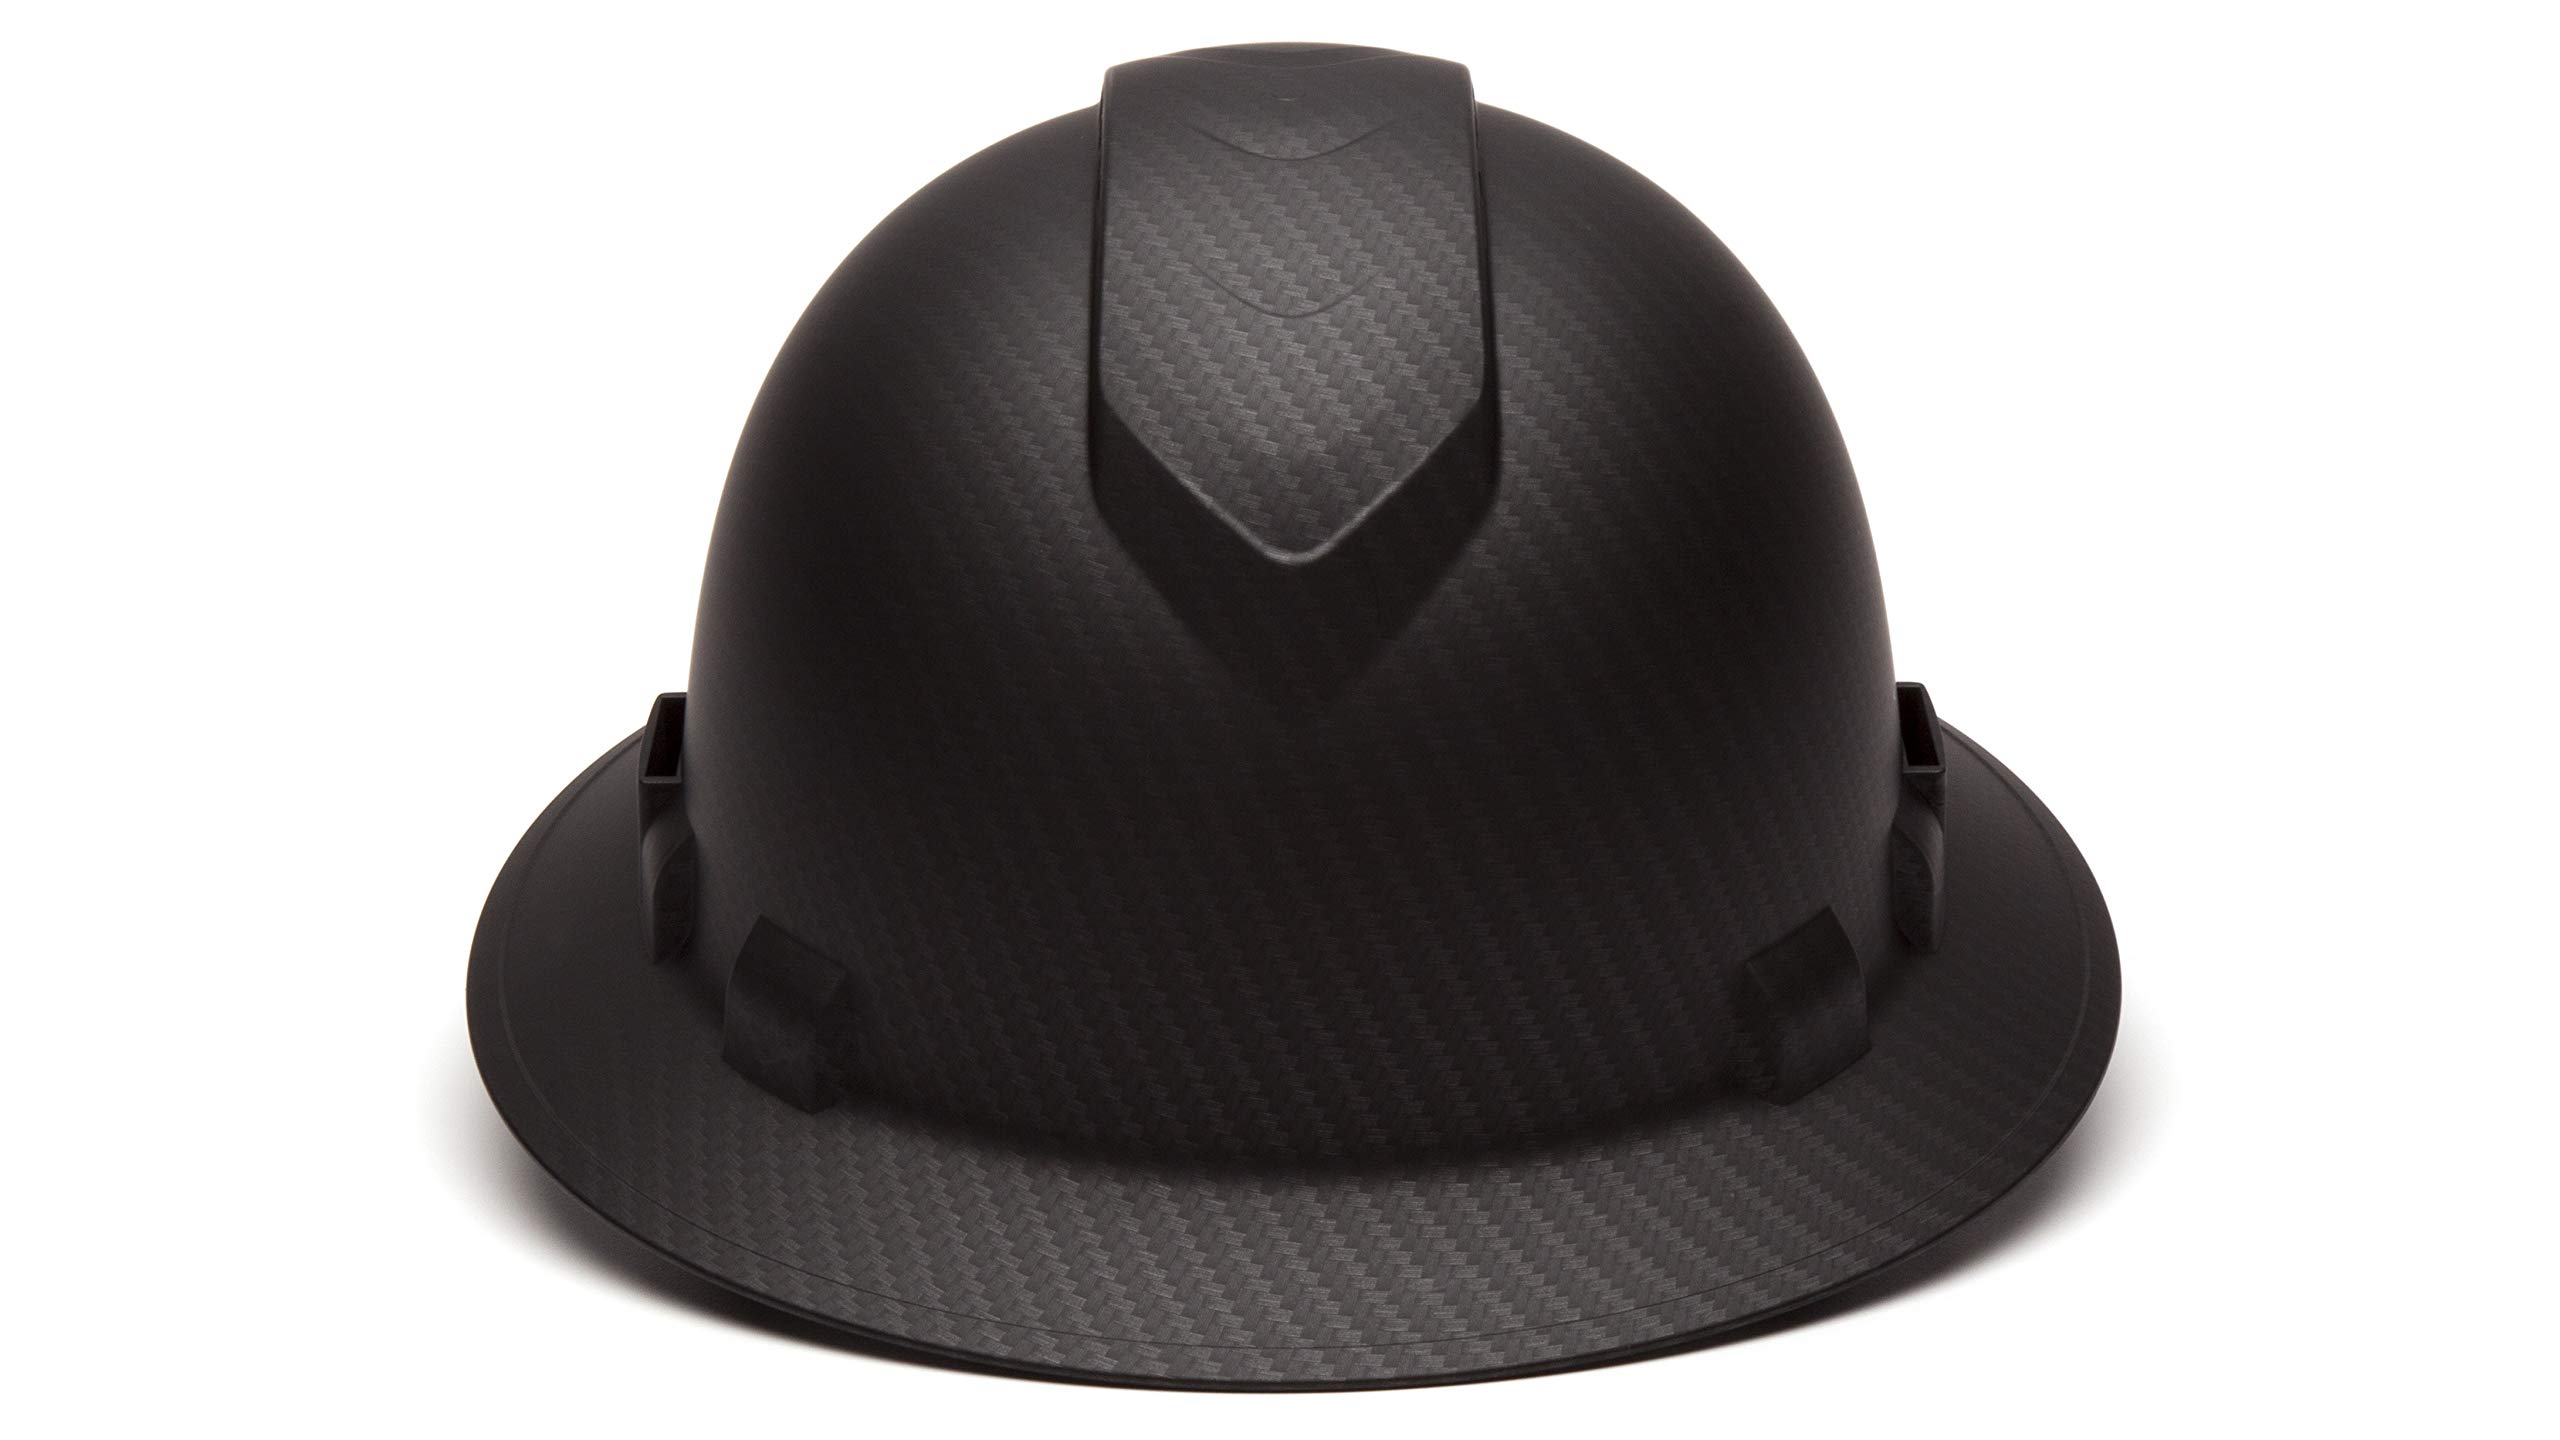 Pyramex Ridgeline Full Brim Hard Hat, Vented, 4-Point Ratchet Suspension, Matte Black Graphite Pattern